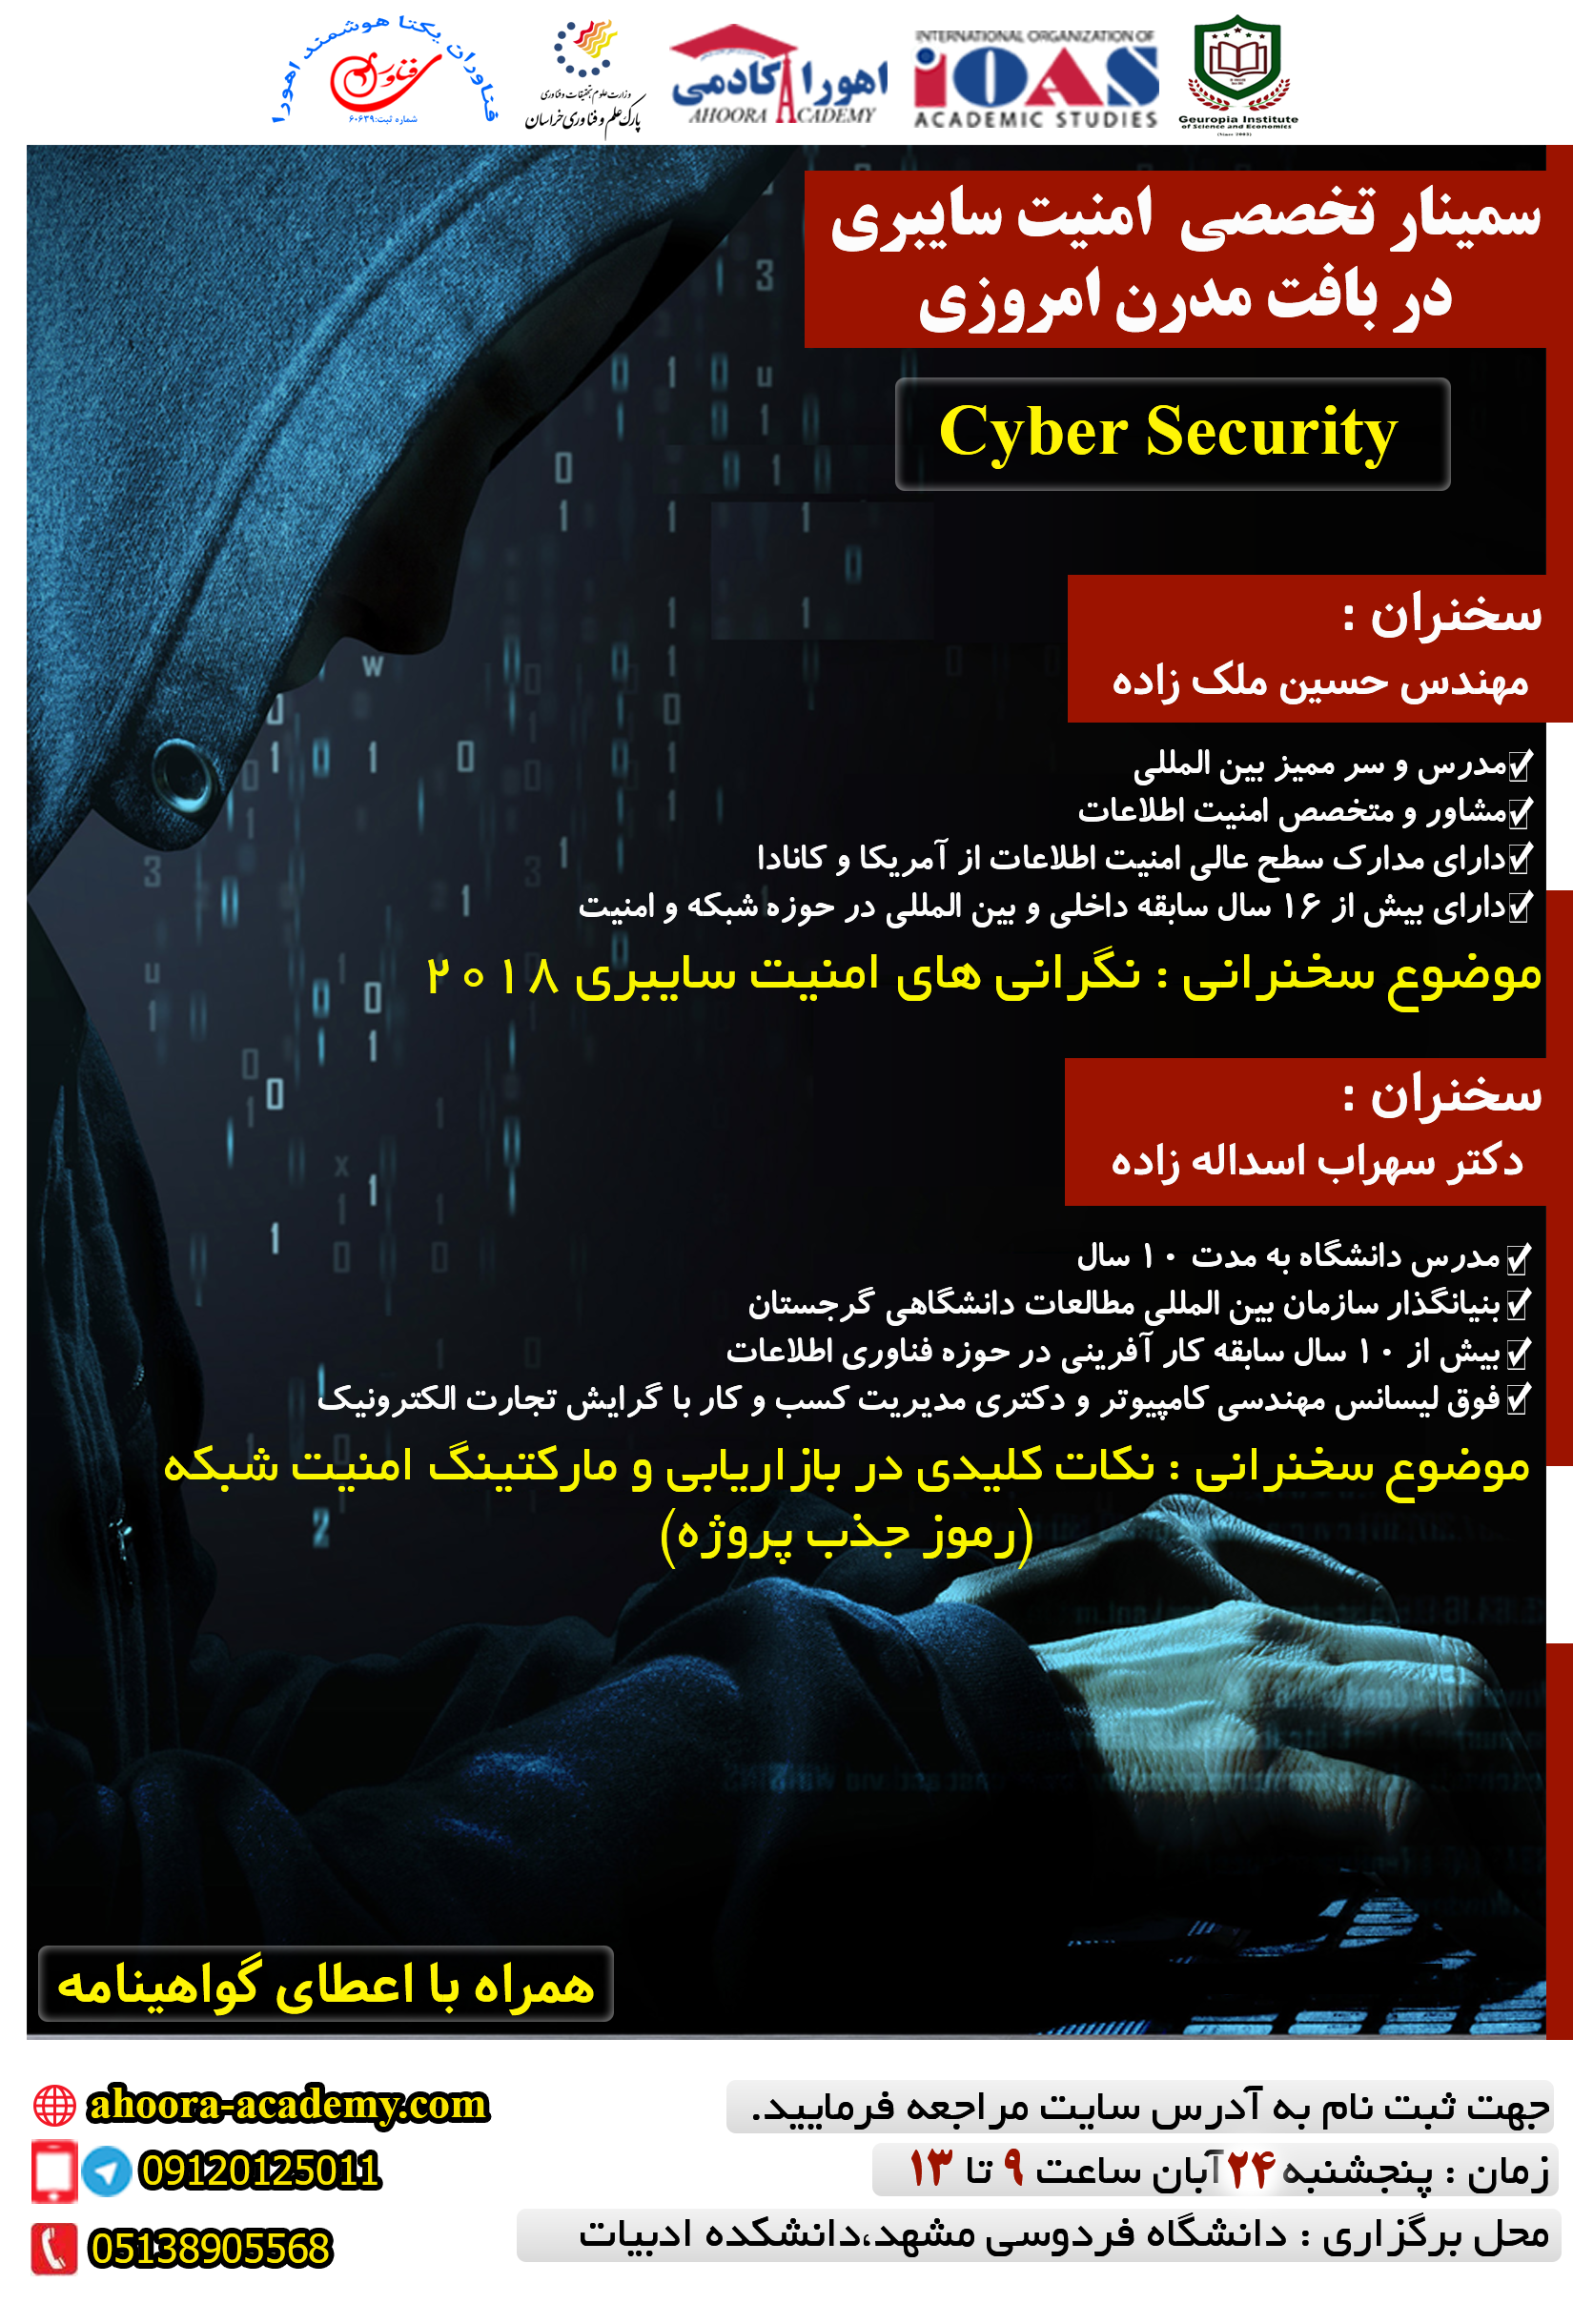 فراخوان سمینار تخصصی امنیت سایبری در بافت مدرن امروزی